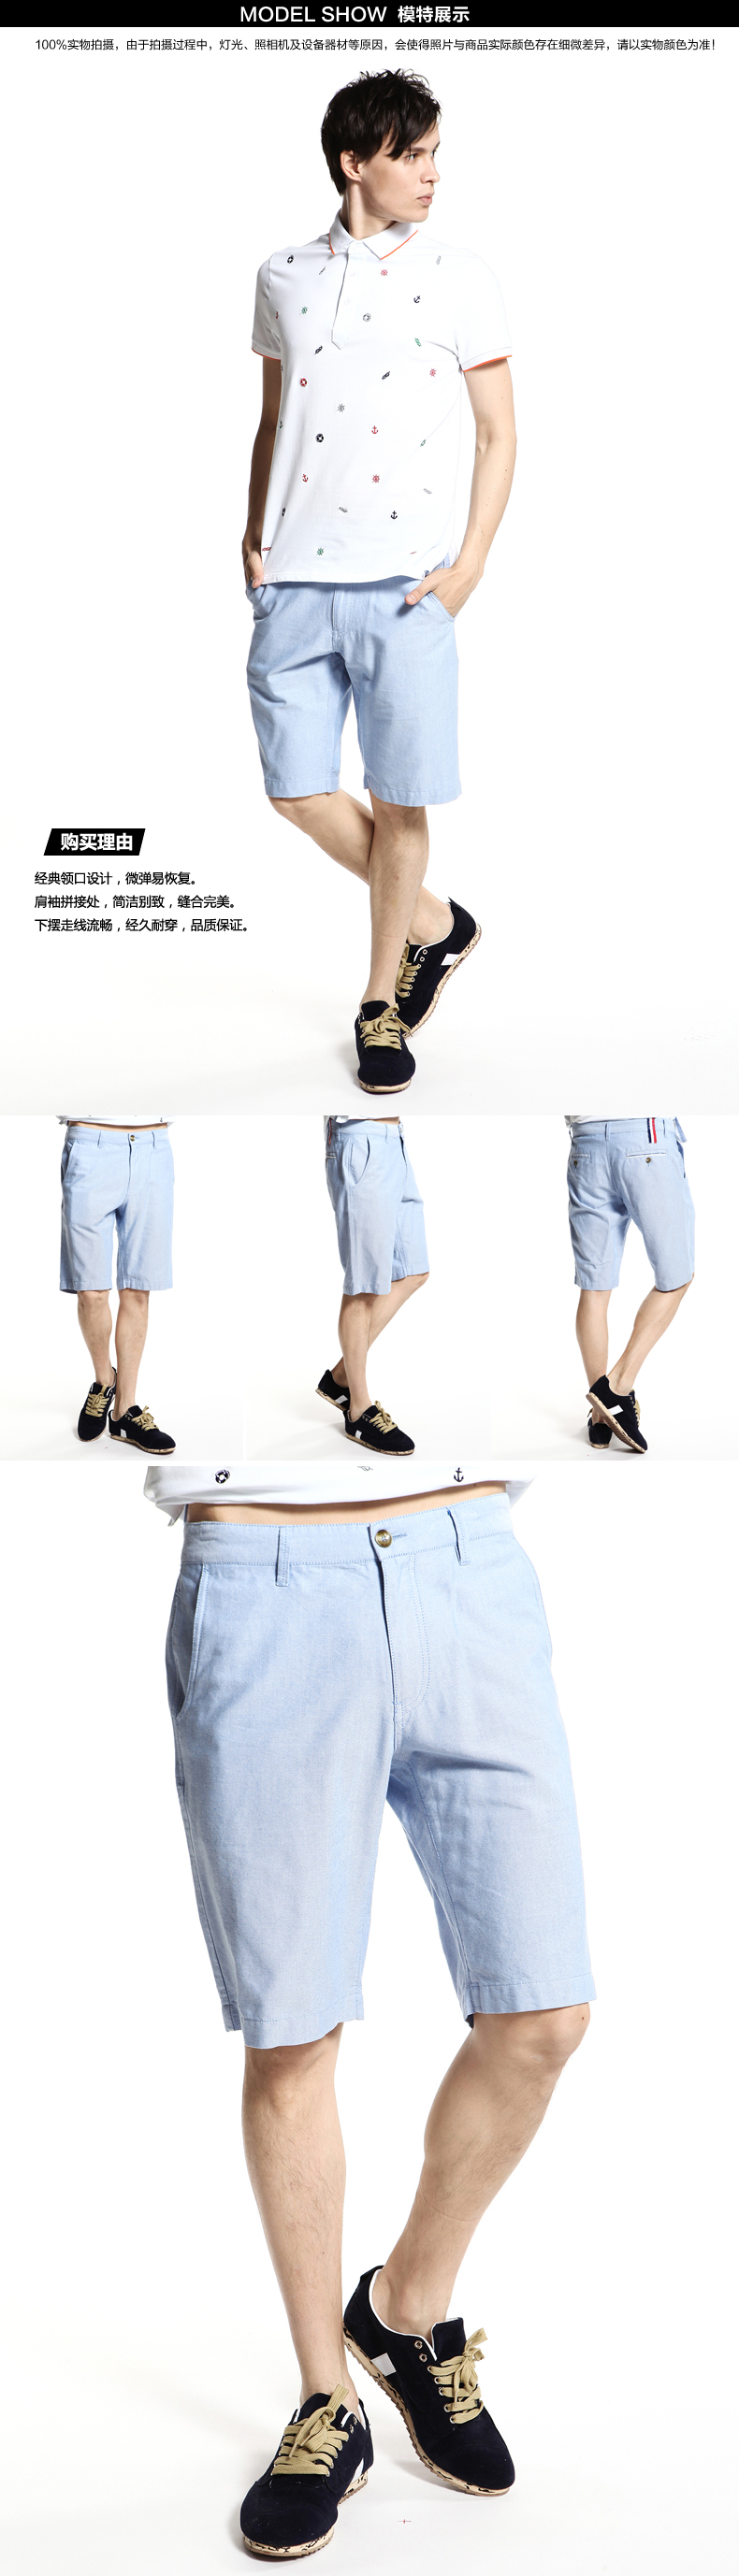 【2014夏装新品】TONYJEANS汤尼俊士男士时尚休闲短裤2240032D